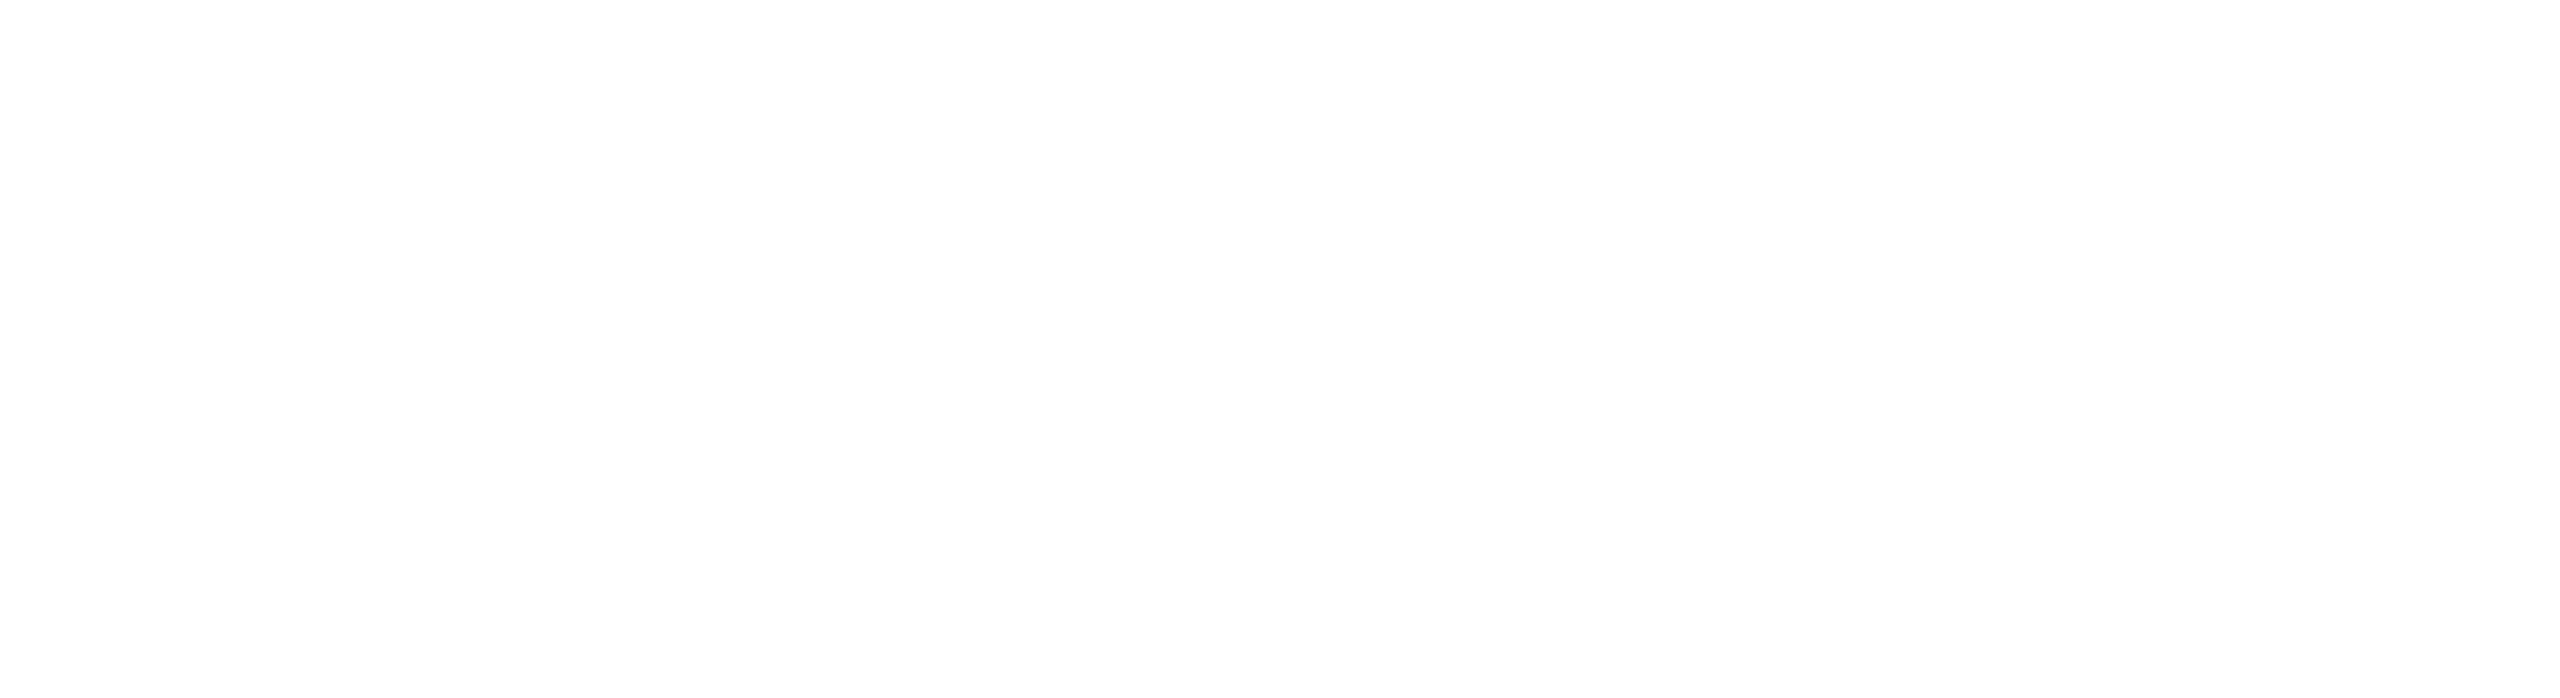 Platinum Wealth Management